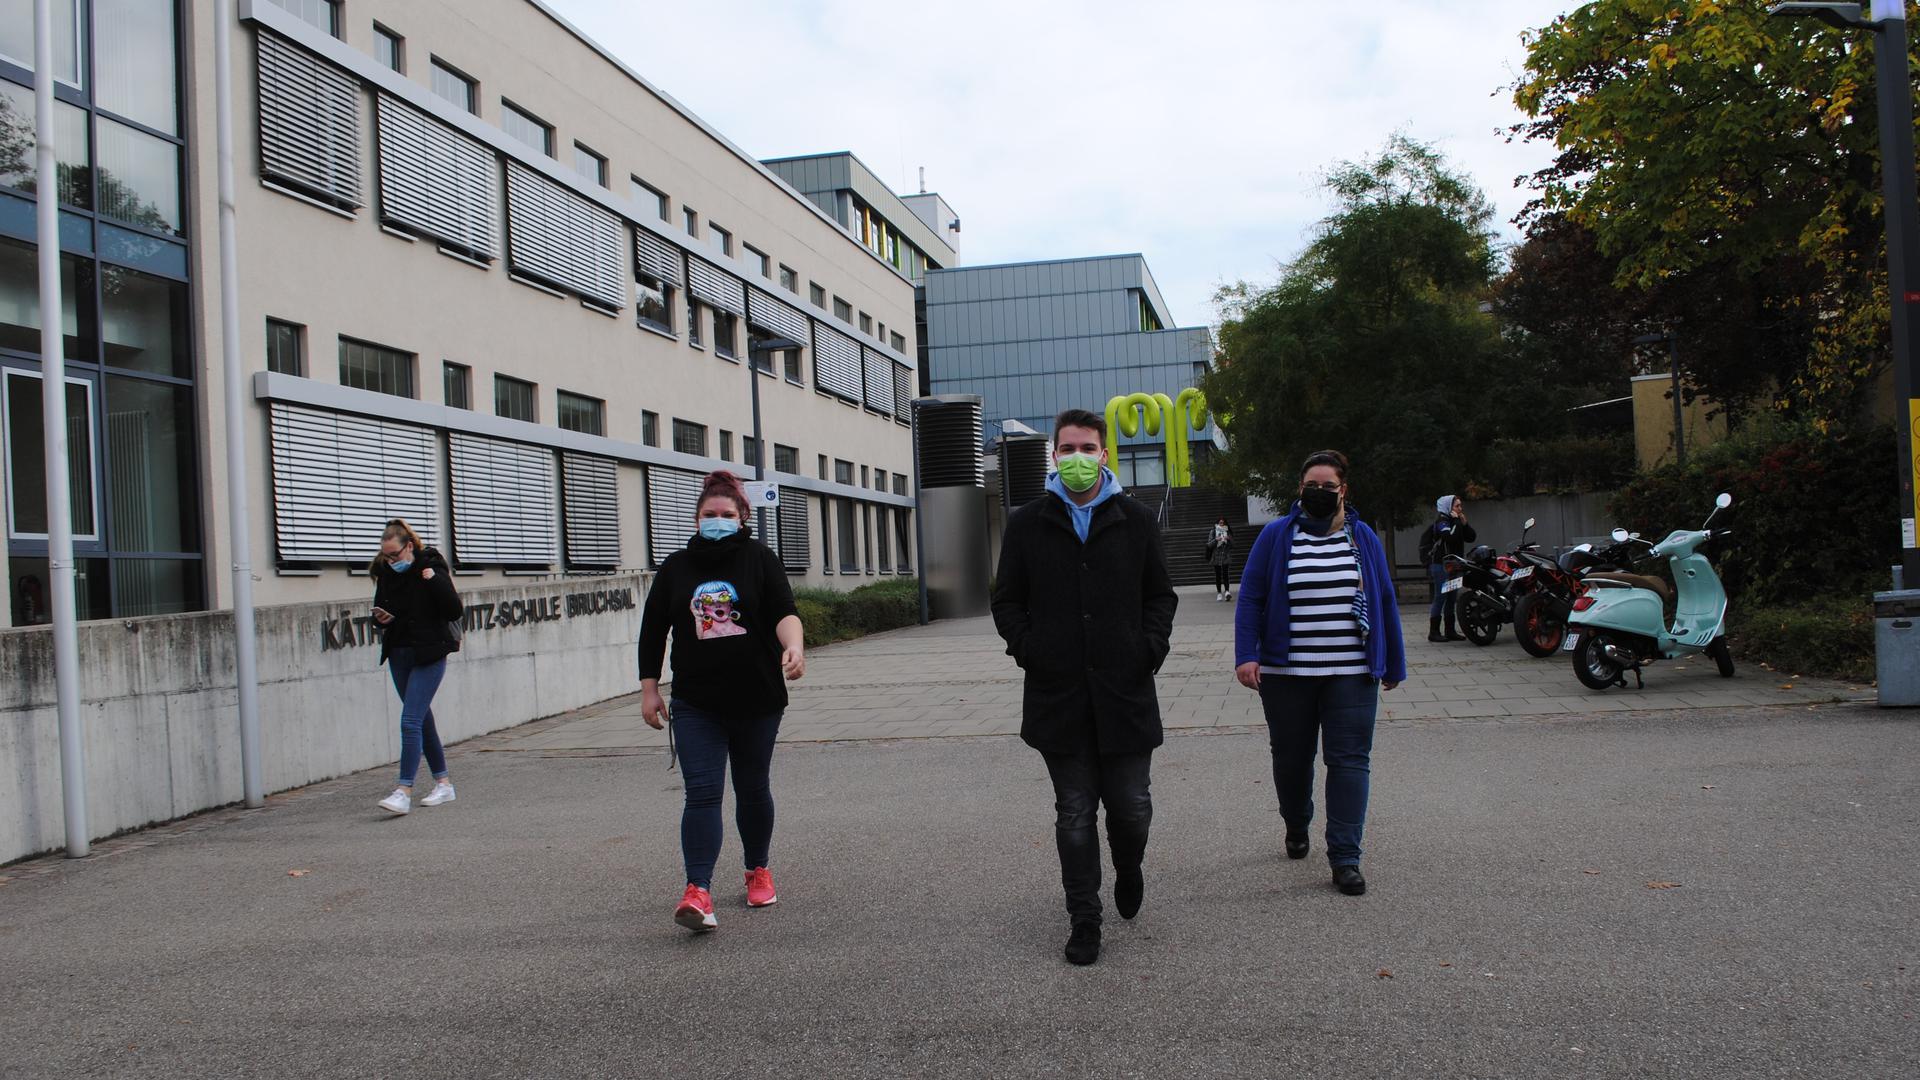 Maskenpflicht auf dem Schulgelände: Kathrin Seeger (35), Lukas Funk (24) und Verena Schreier (38), Schüler der Käthe-Kollwitz-Schule, halten sich an die Corona-Regeln.